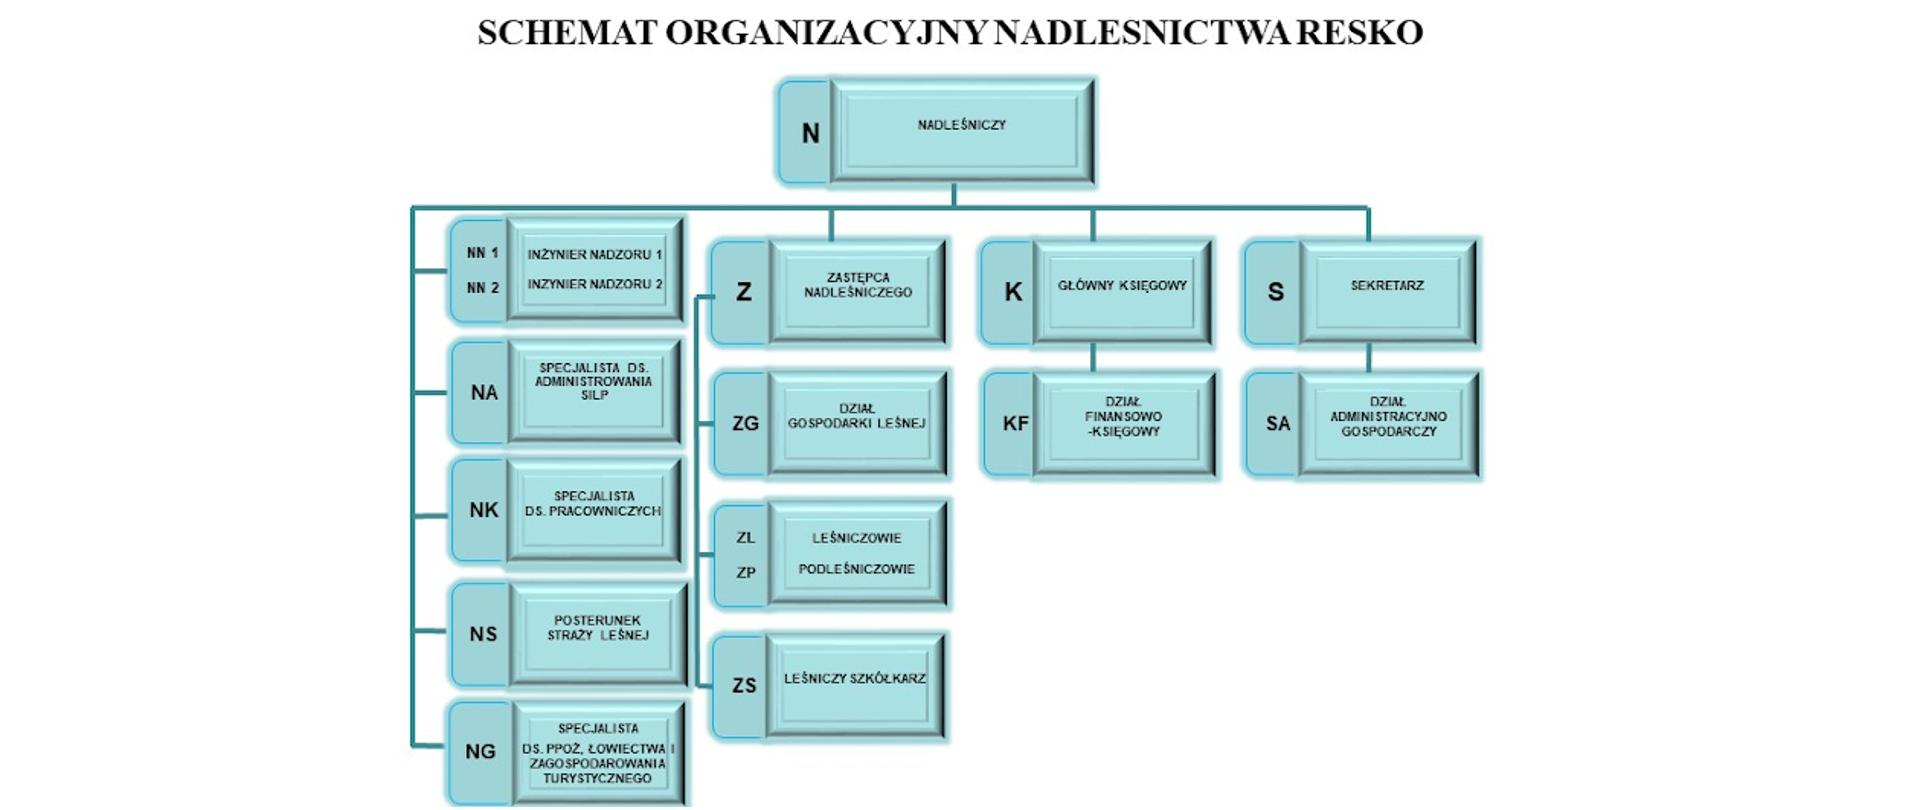 Schemat przedstawiający strukturę organizacyjną Nadleśnictwa Resko 